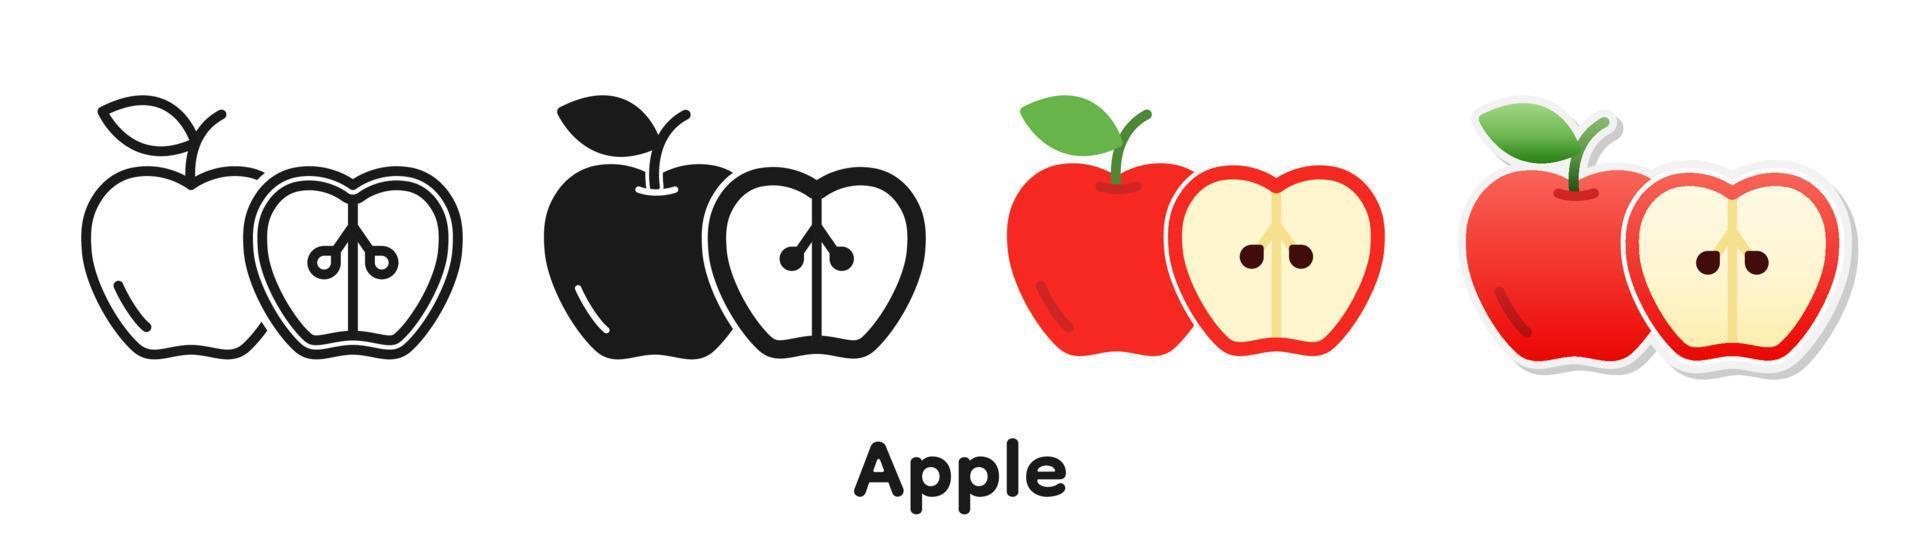 vektor ikonuppsättning av äpple.